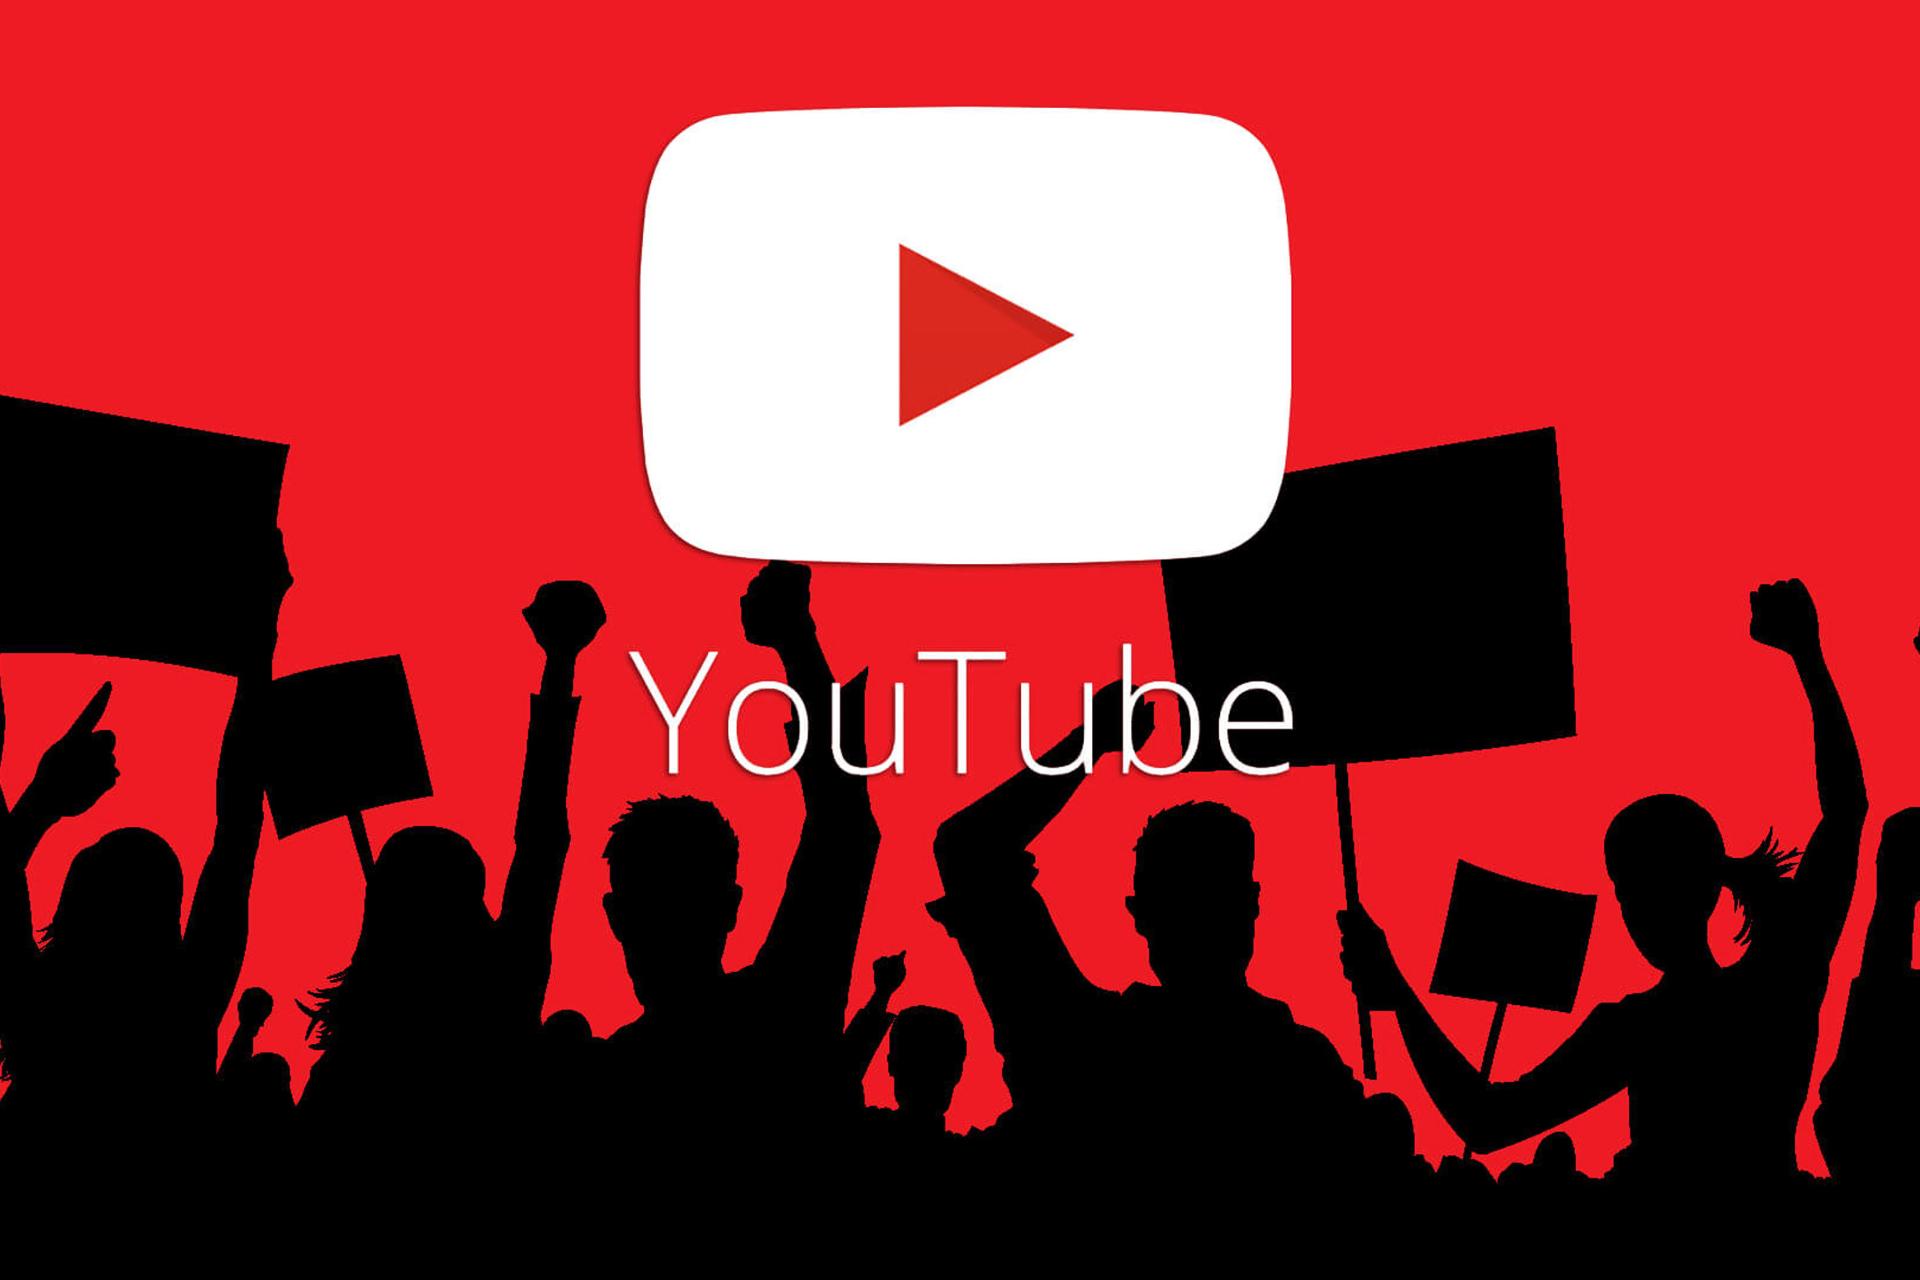 لوگو سفید یوتیوب / YouTube در پس زمینه قرمز مردم به رنگ مشکی